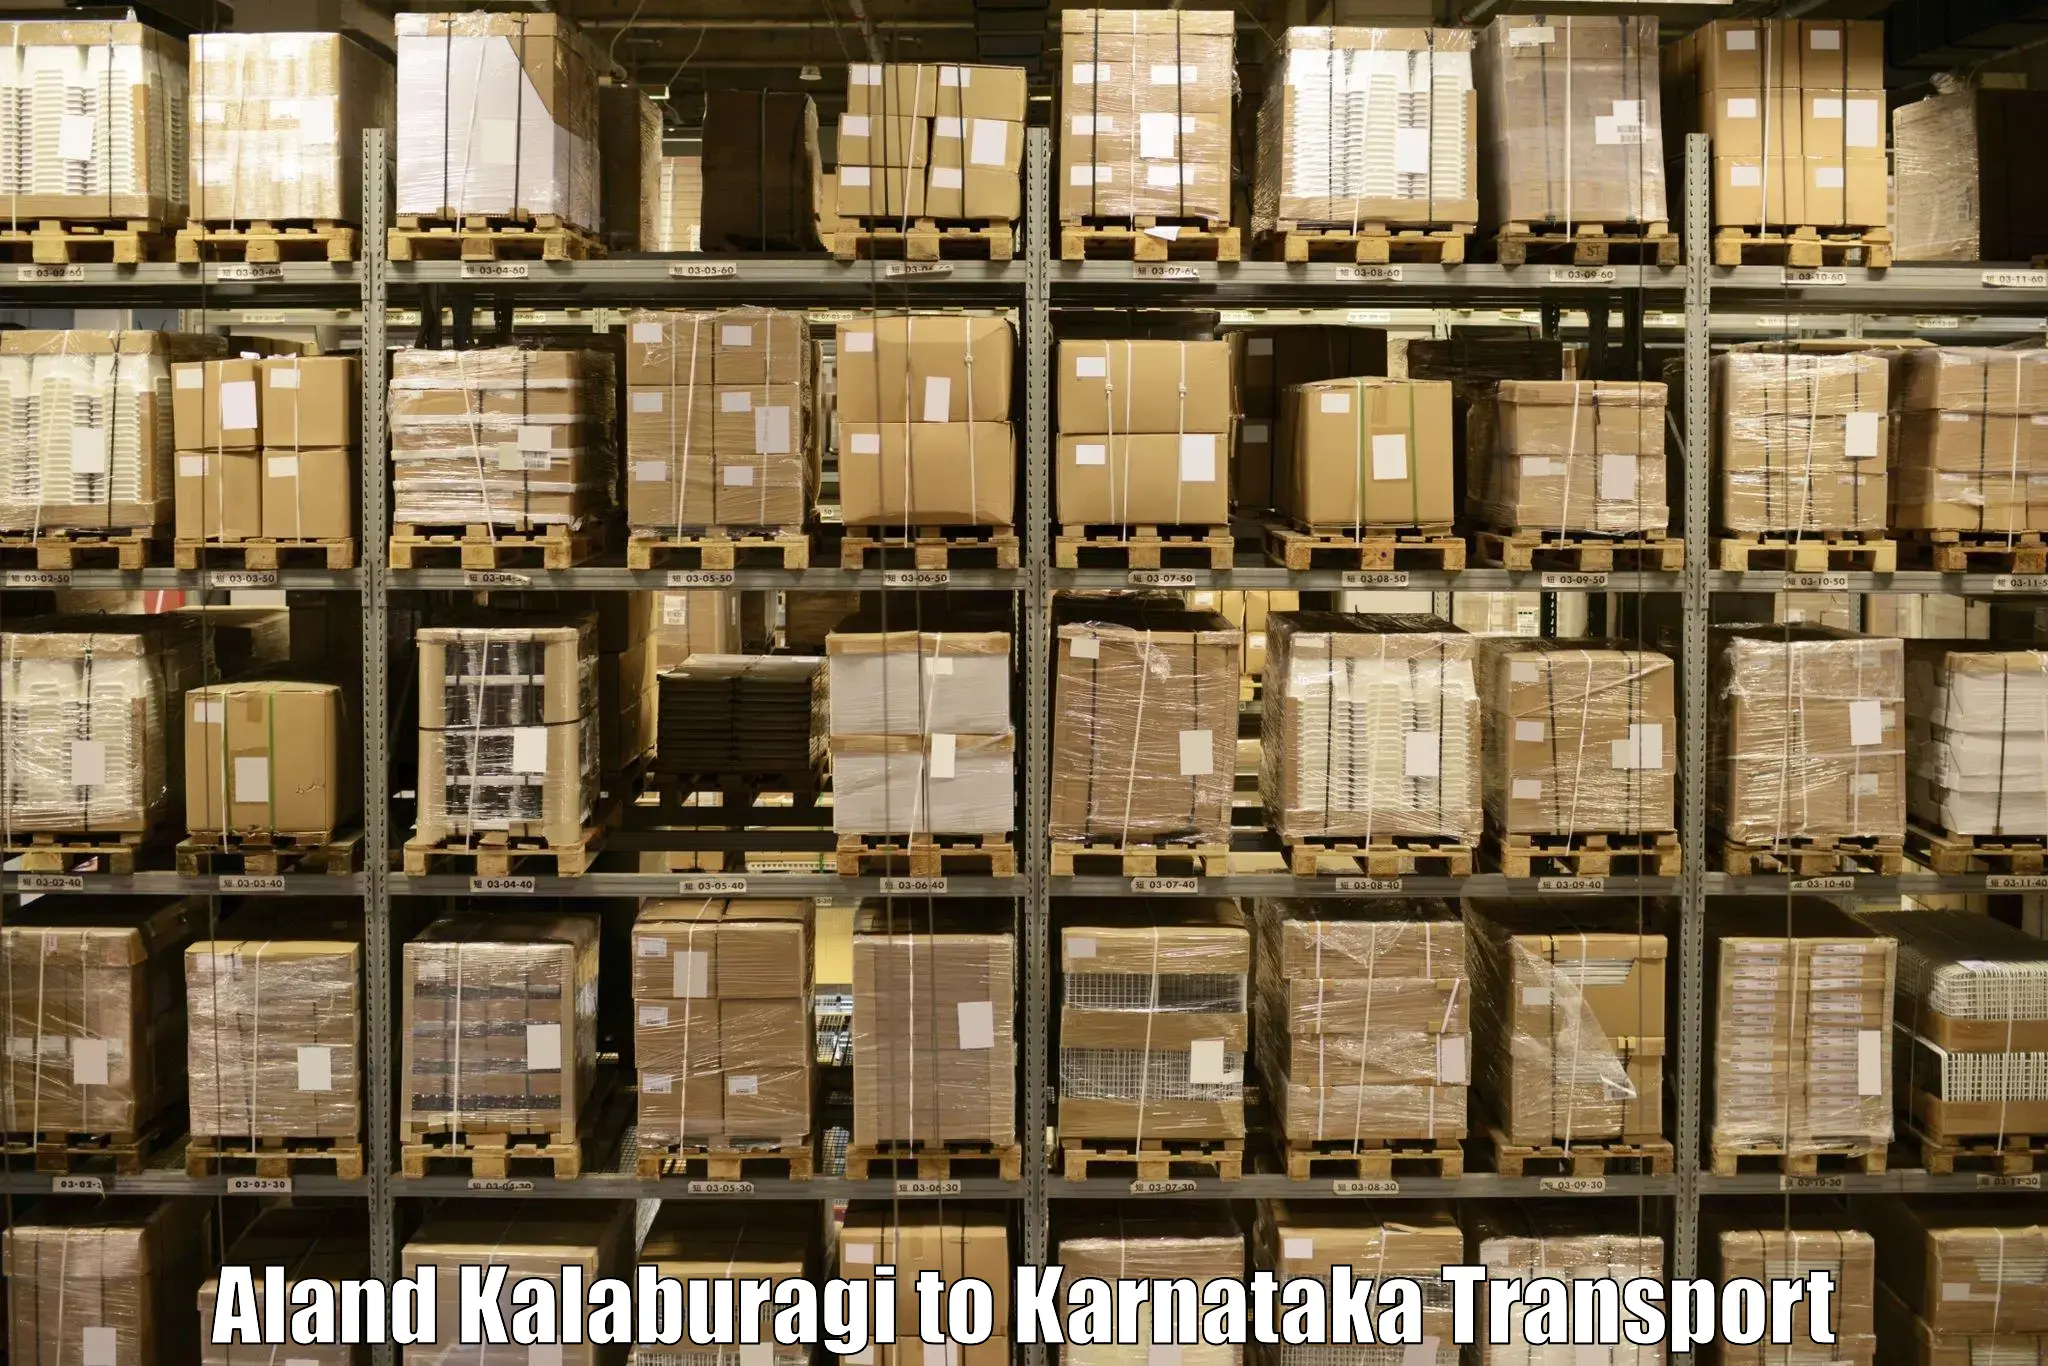 Furniture transport service Aland Kalaburagi to Raibag